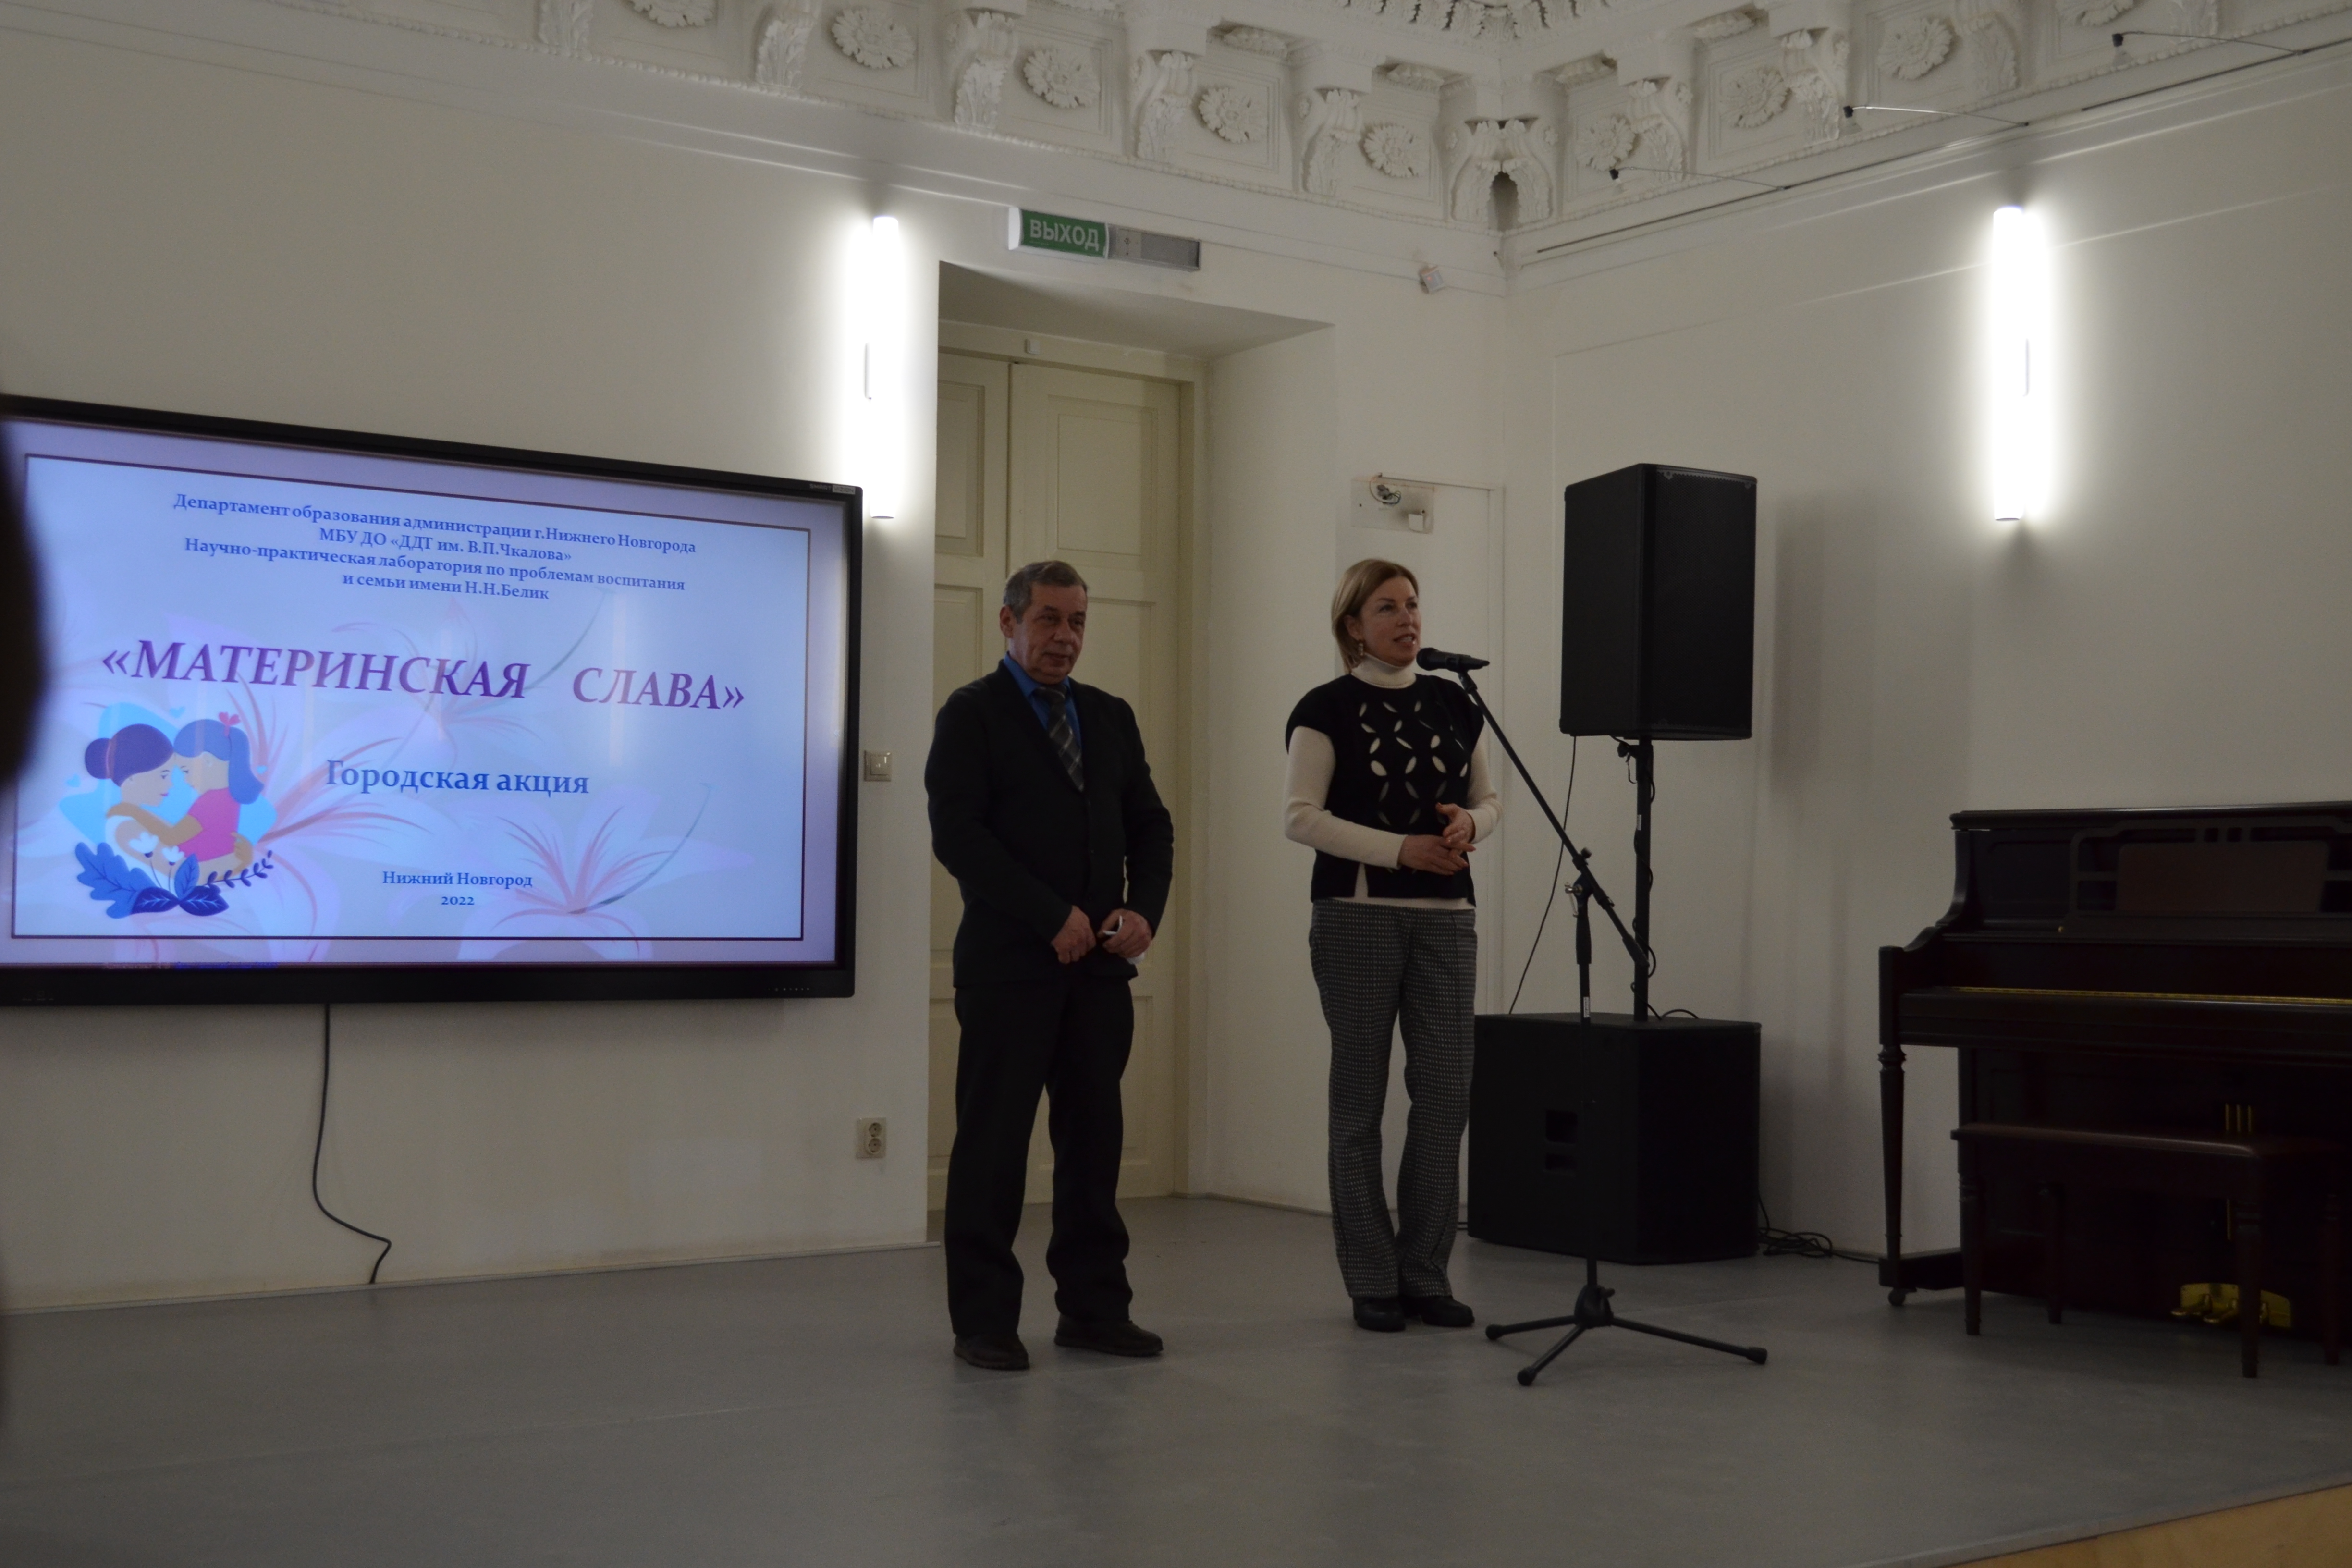 Педагог Мининского университета поздравил победителей городской акции «Материнская слава» 